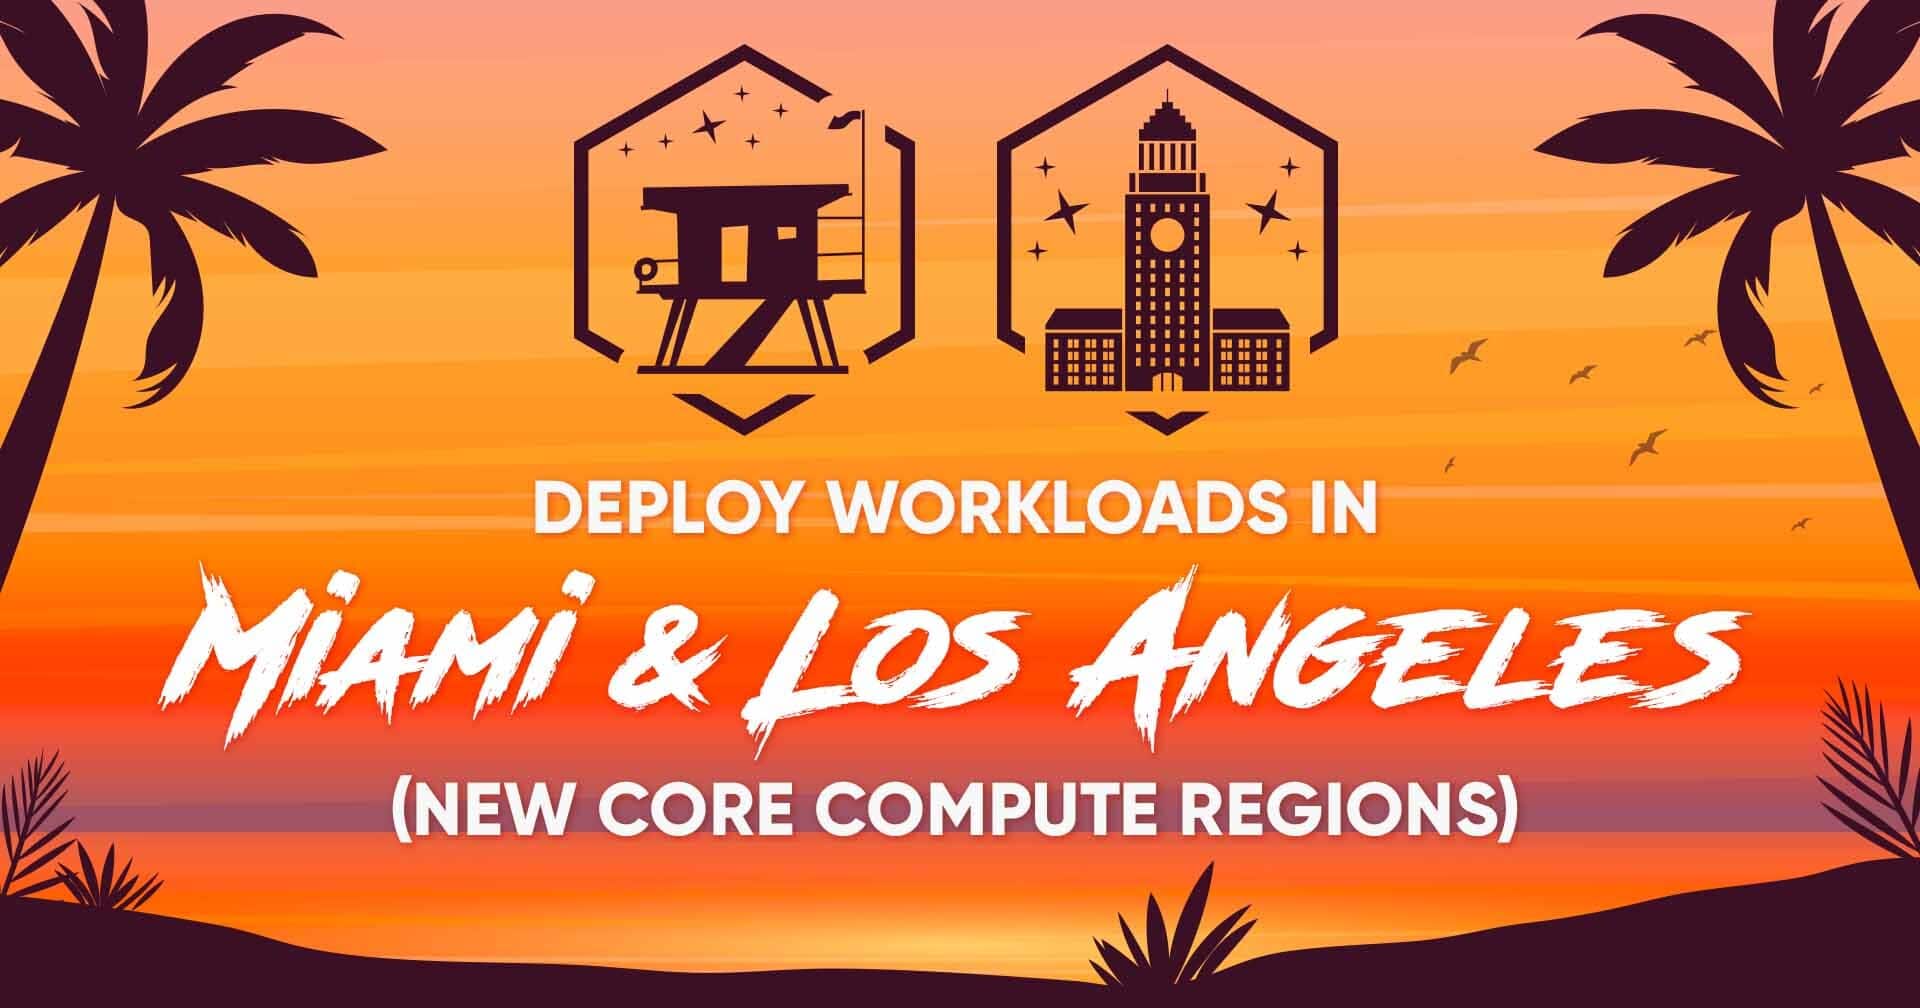 Distribuite i carichi di lavoro a Miami e Los Angeles con le nuove regioni Core Compute!